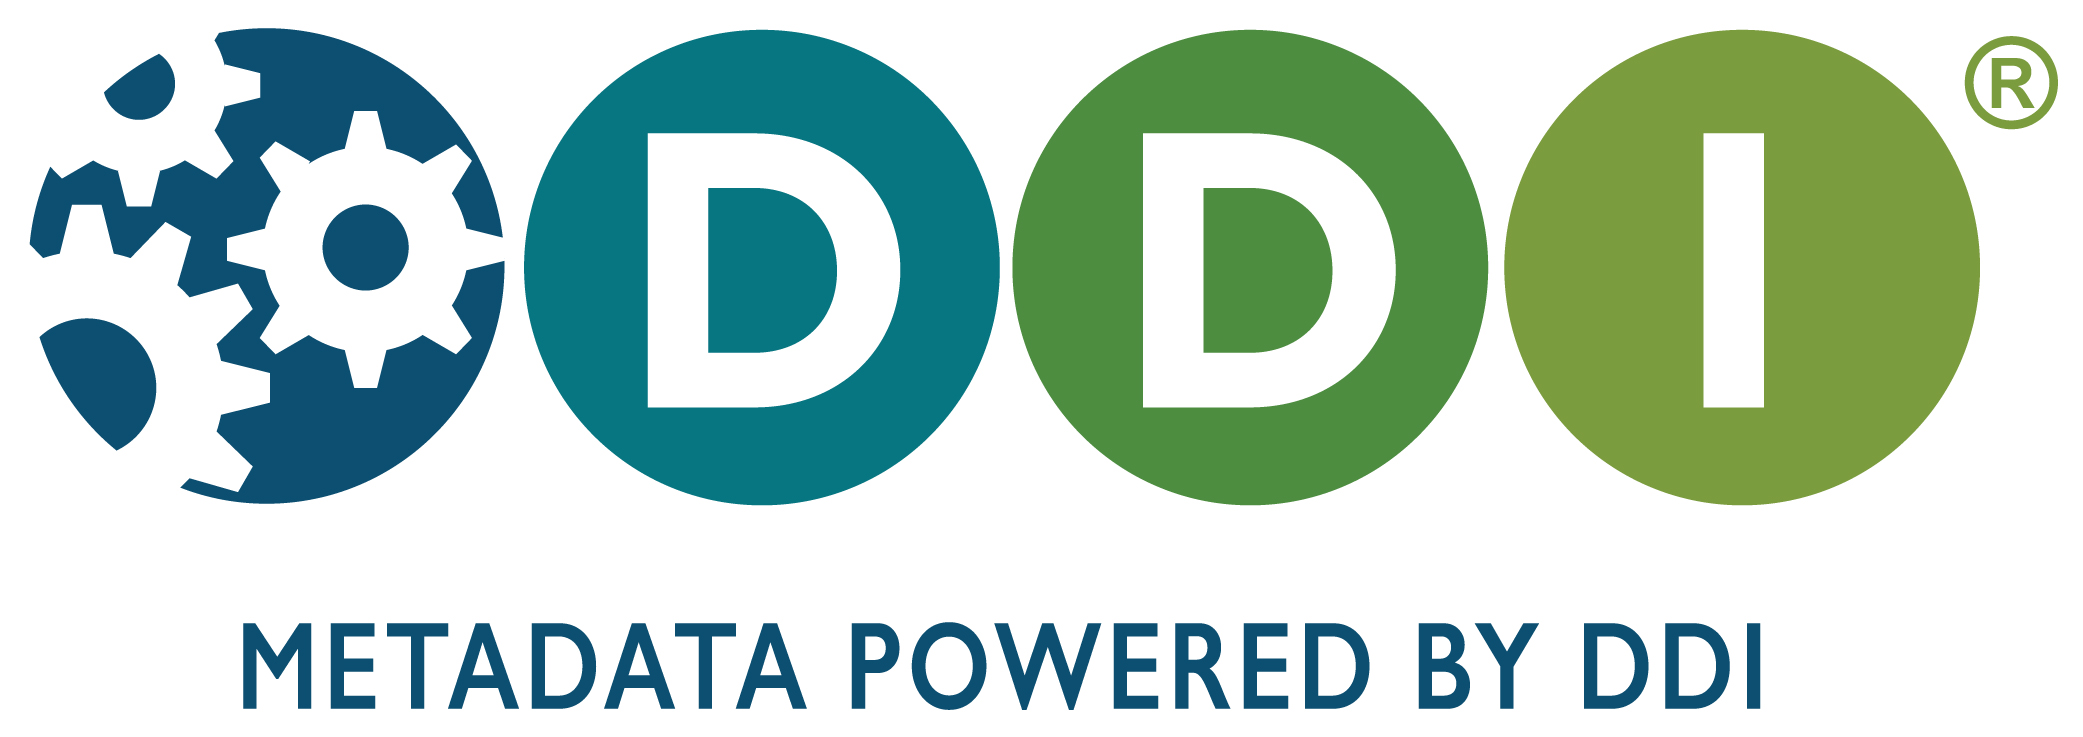 DDI logo with Tagline 1 -- "Metadata powered by DDI"